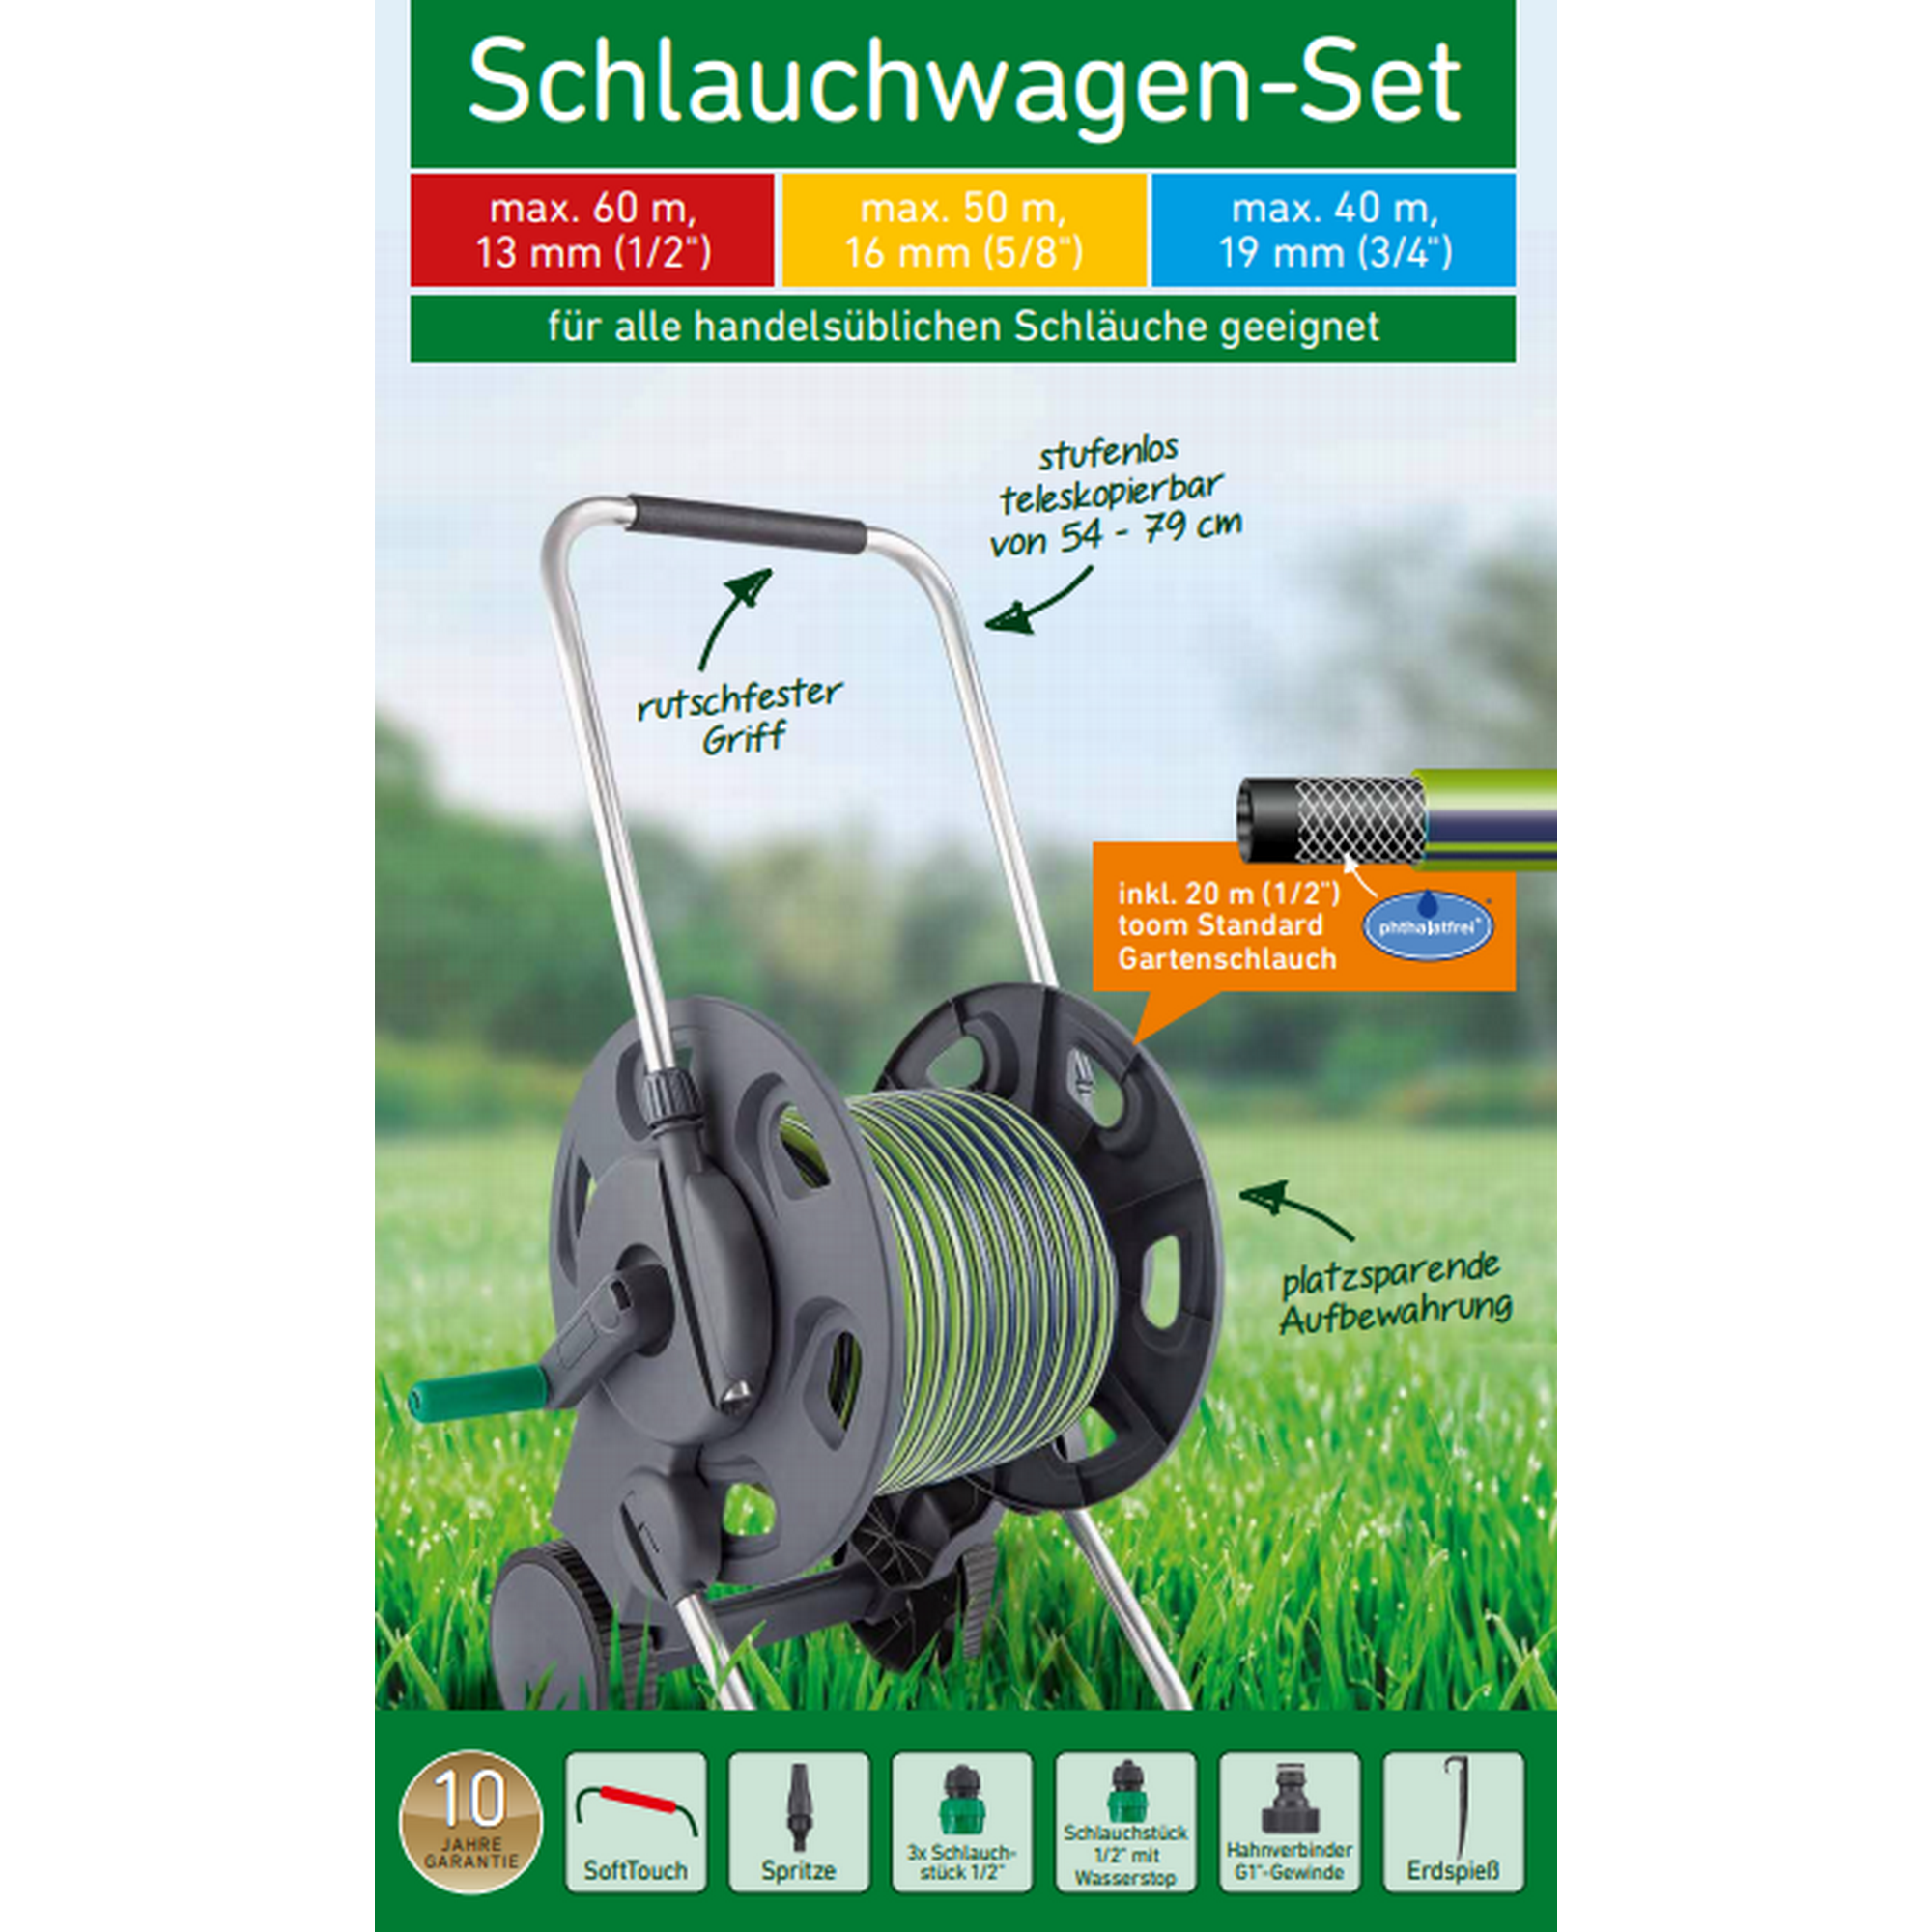 Schlauchwagen-Set anthrazit/grün 20 m + product picture